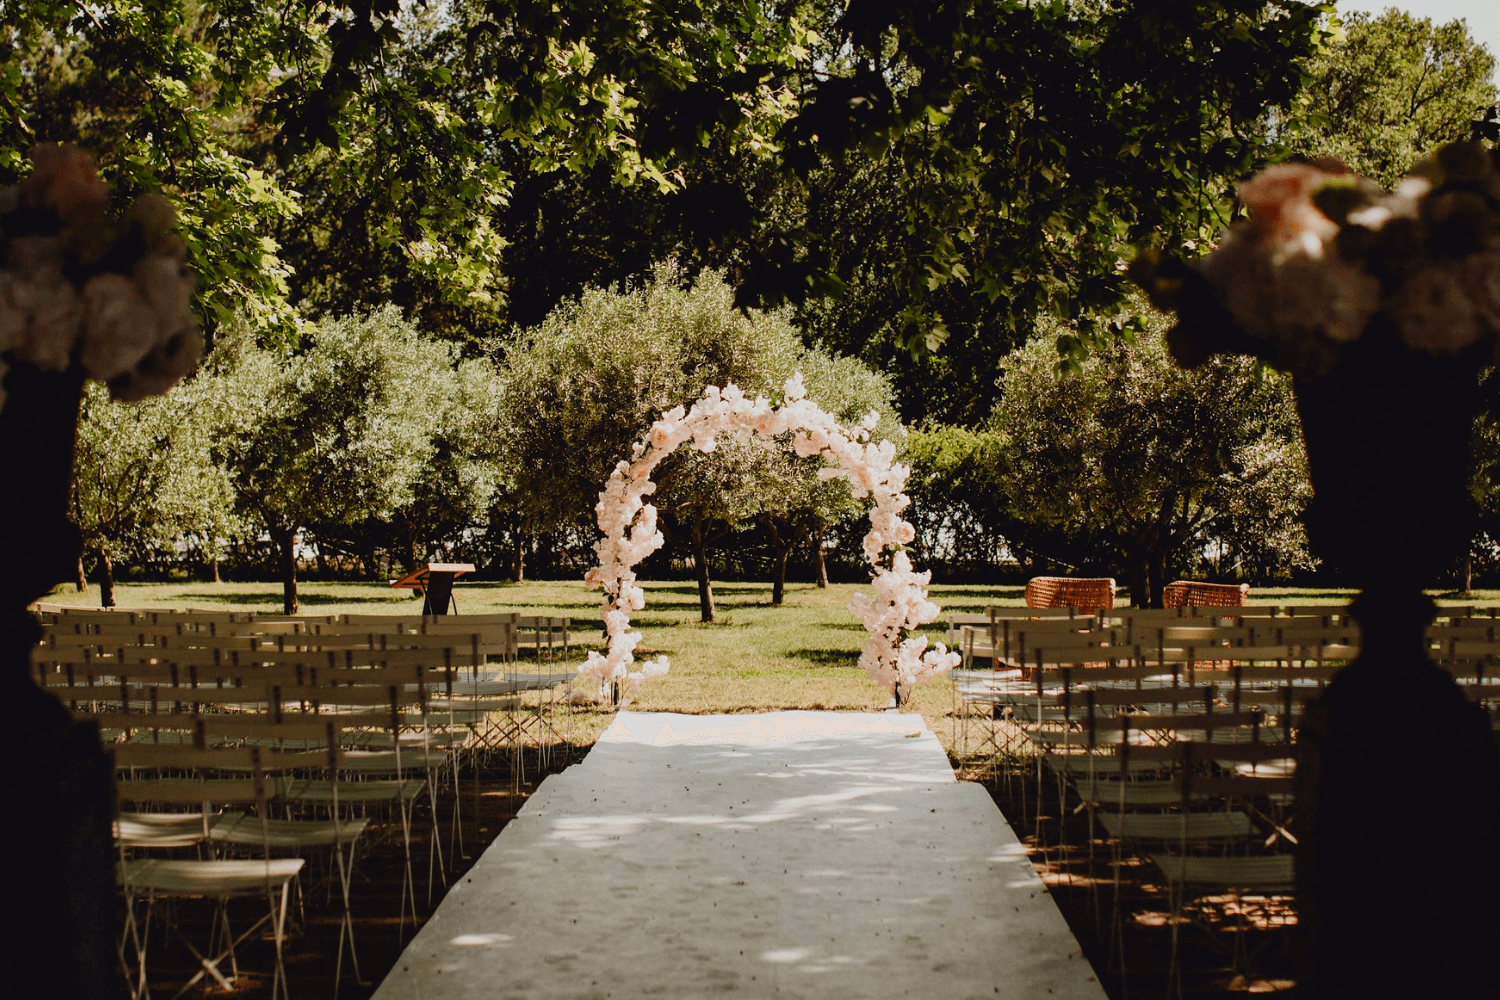 Un lieu de réception de cérémonie laïque extérieur entouré d’arbres, avec une arche de mariage fleurie au centre.